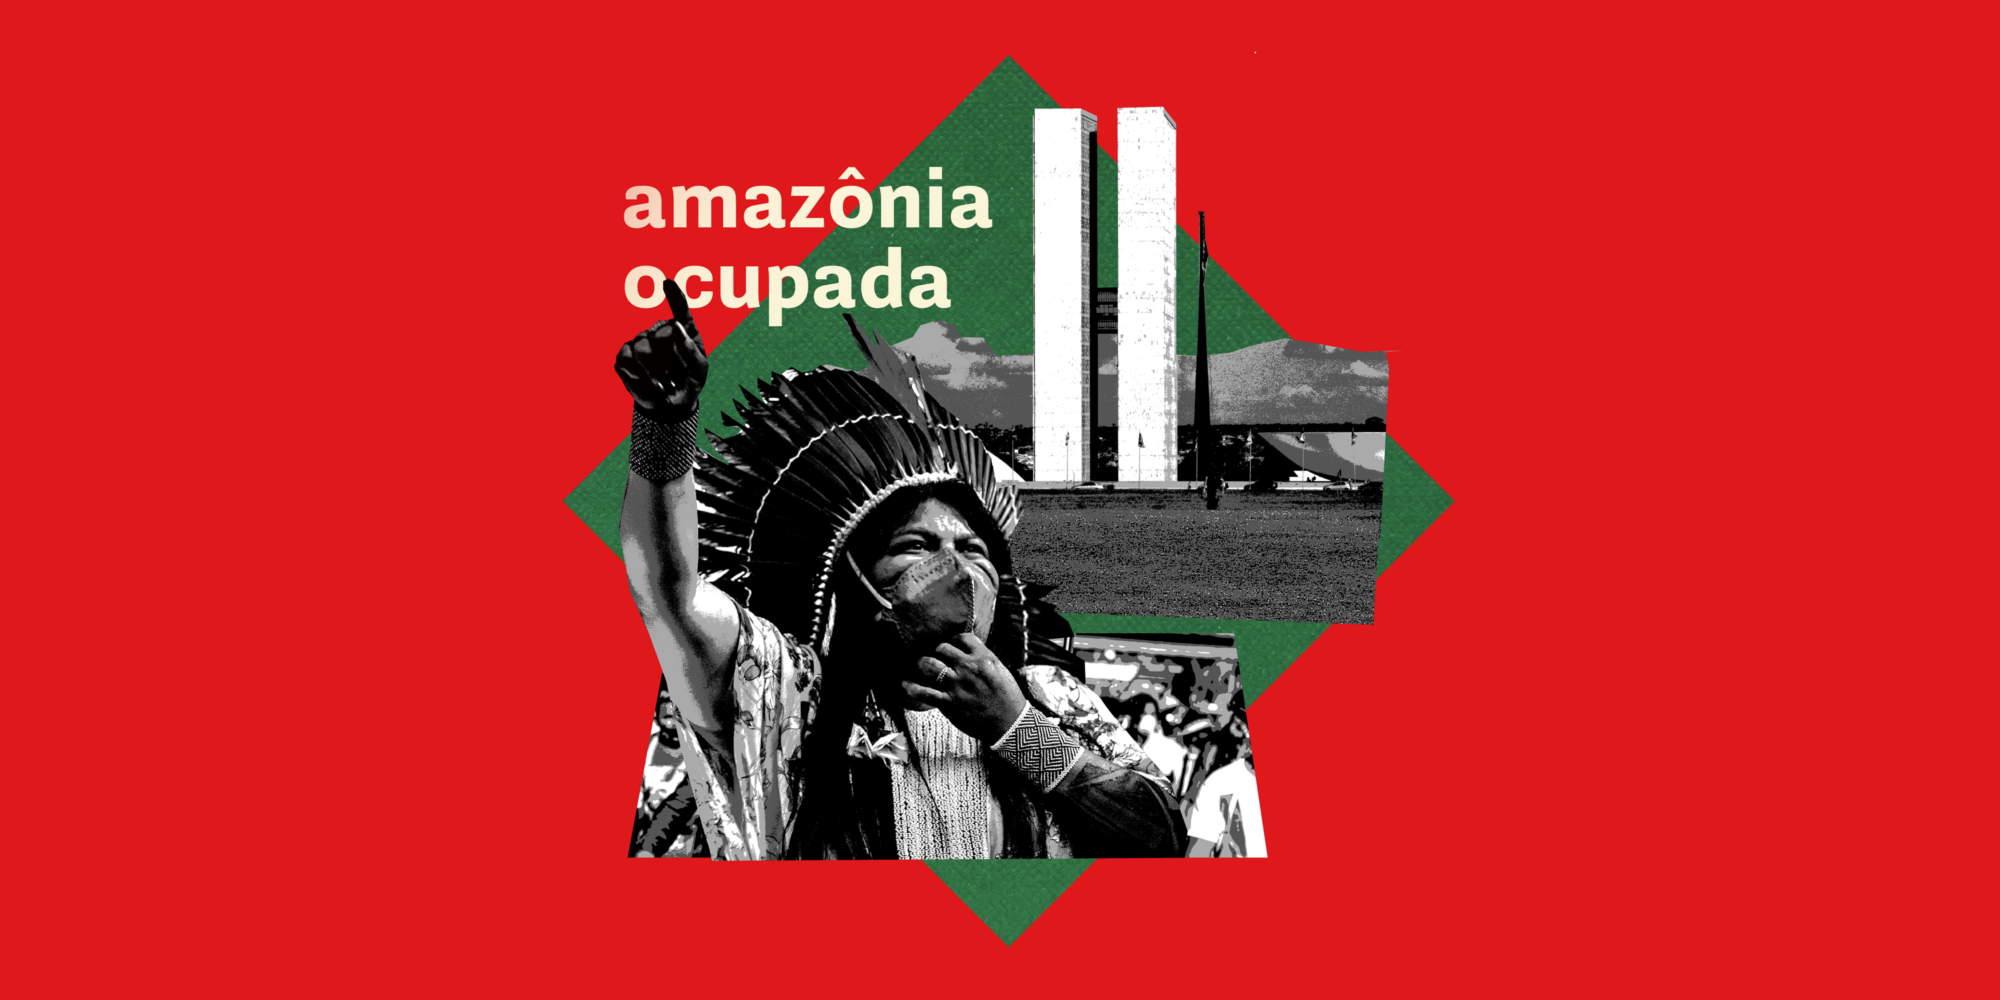 gráfico mostrando um indígena em trajes tradicionais com a legenda "Amazonía ocupada" (Amazônia ocupada)